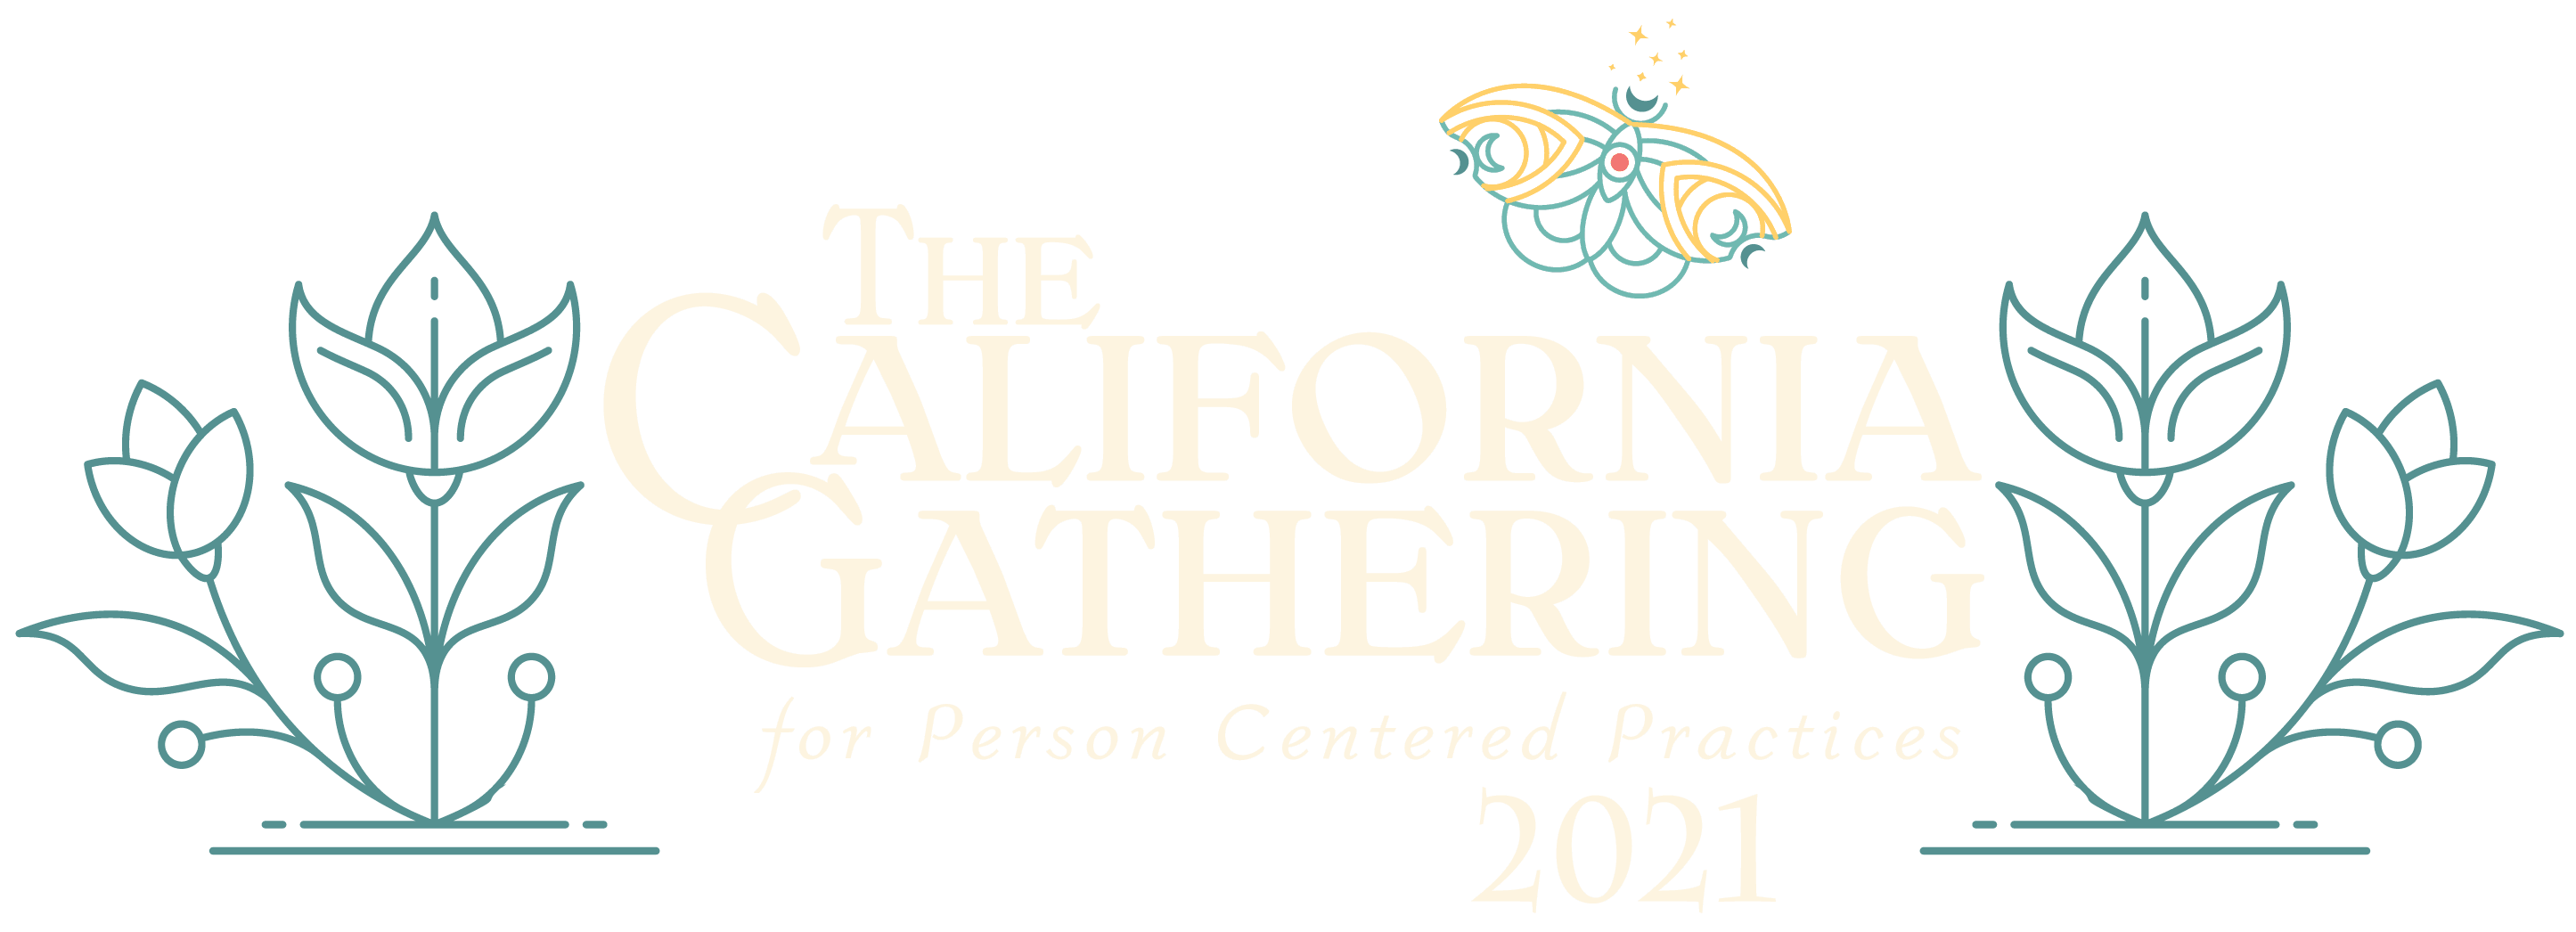 Le rassemblement californien pour les pratiques centrées sur la personne 2021